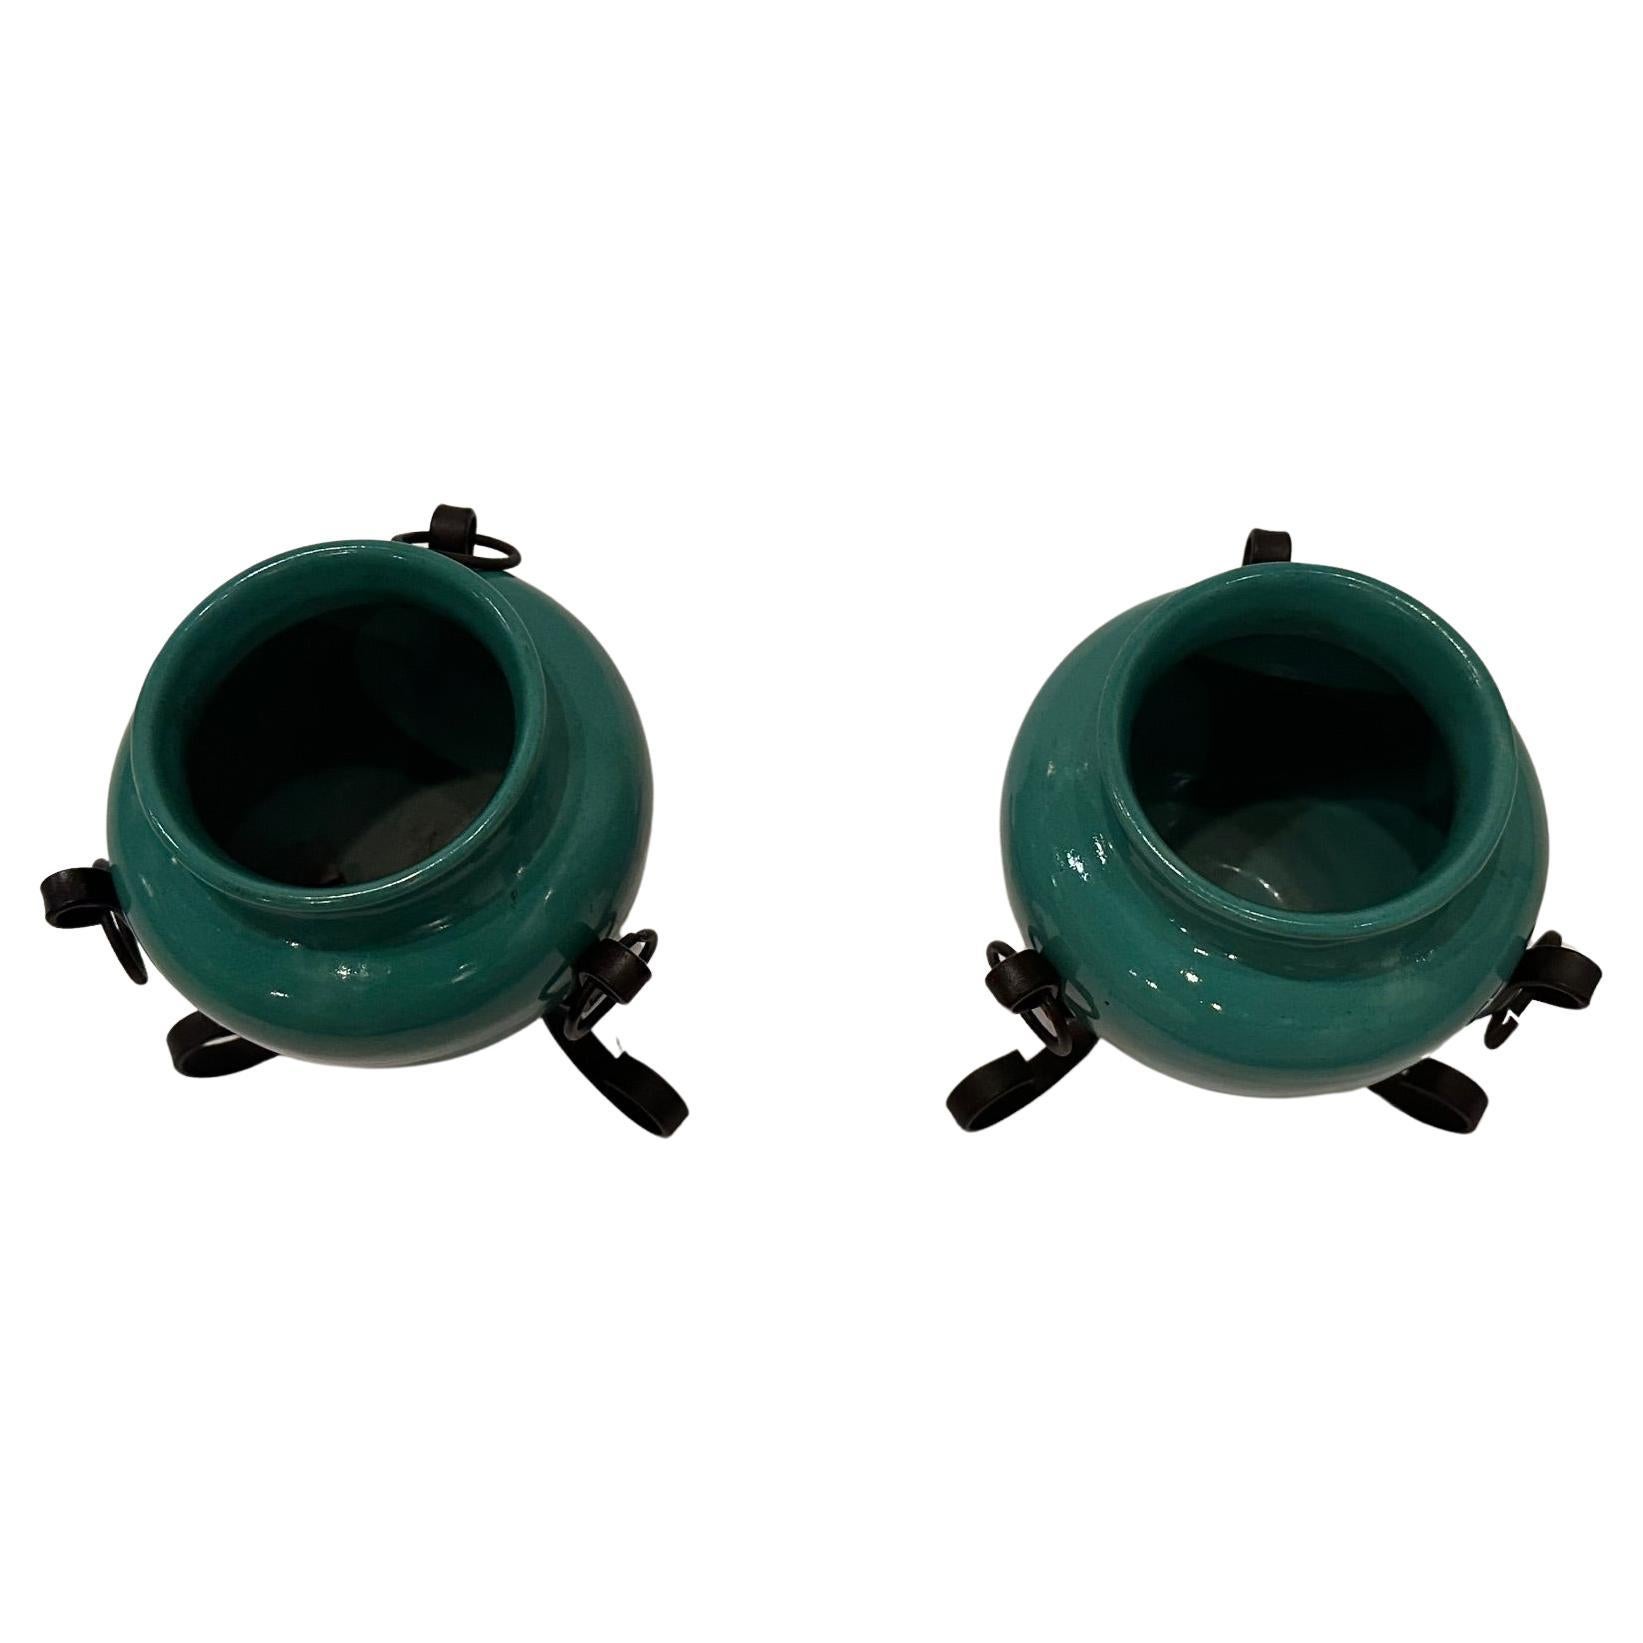 Stilvolles Set von Vasen aus grüner italienischer Keramik, die in schwarzen Ständern aus handgeschmiedetem Eisen stehen.  Öffnung 2,75